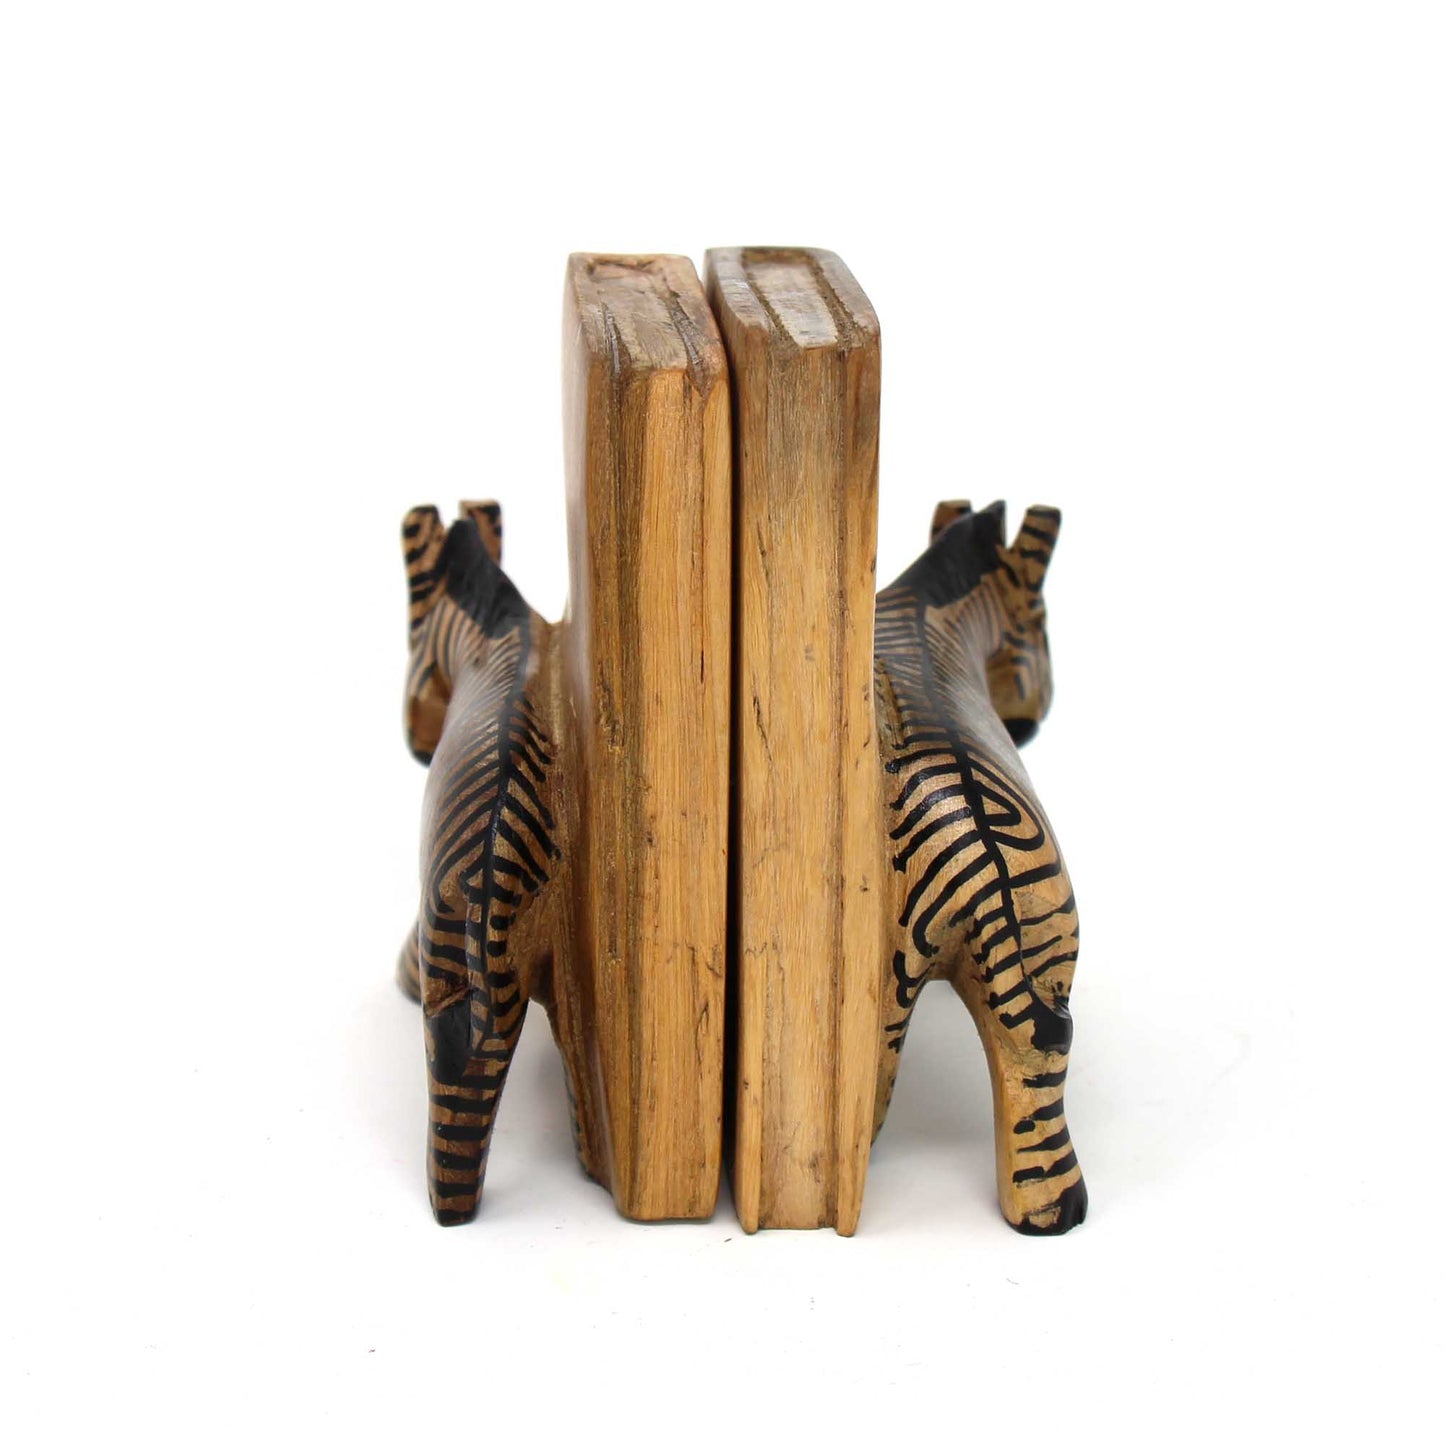 Sujetalibros de cebra de madera tallada. Juego de 2